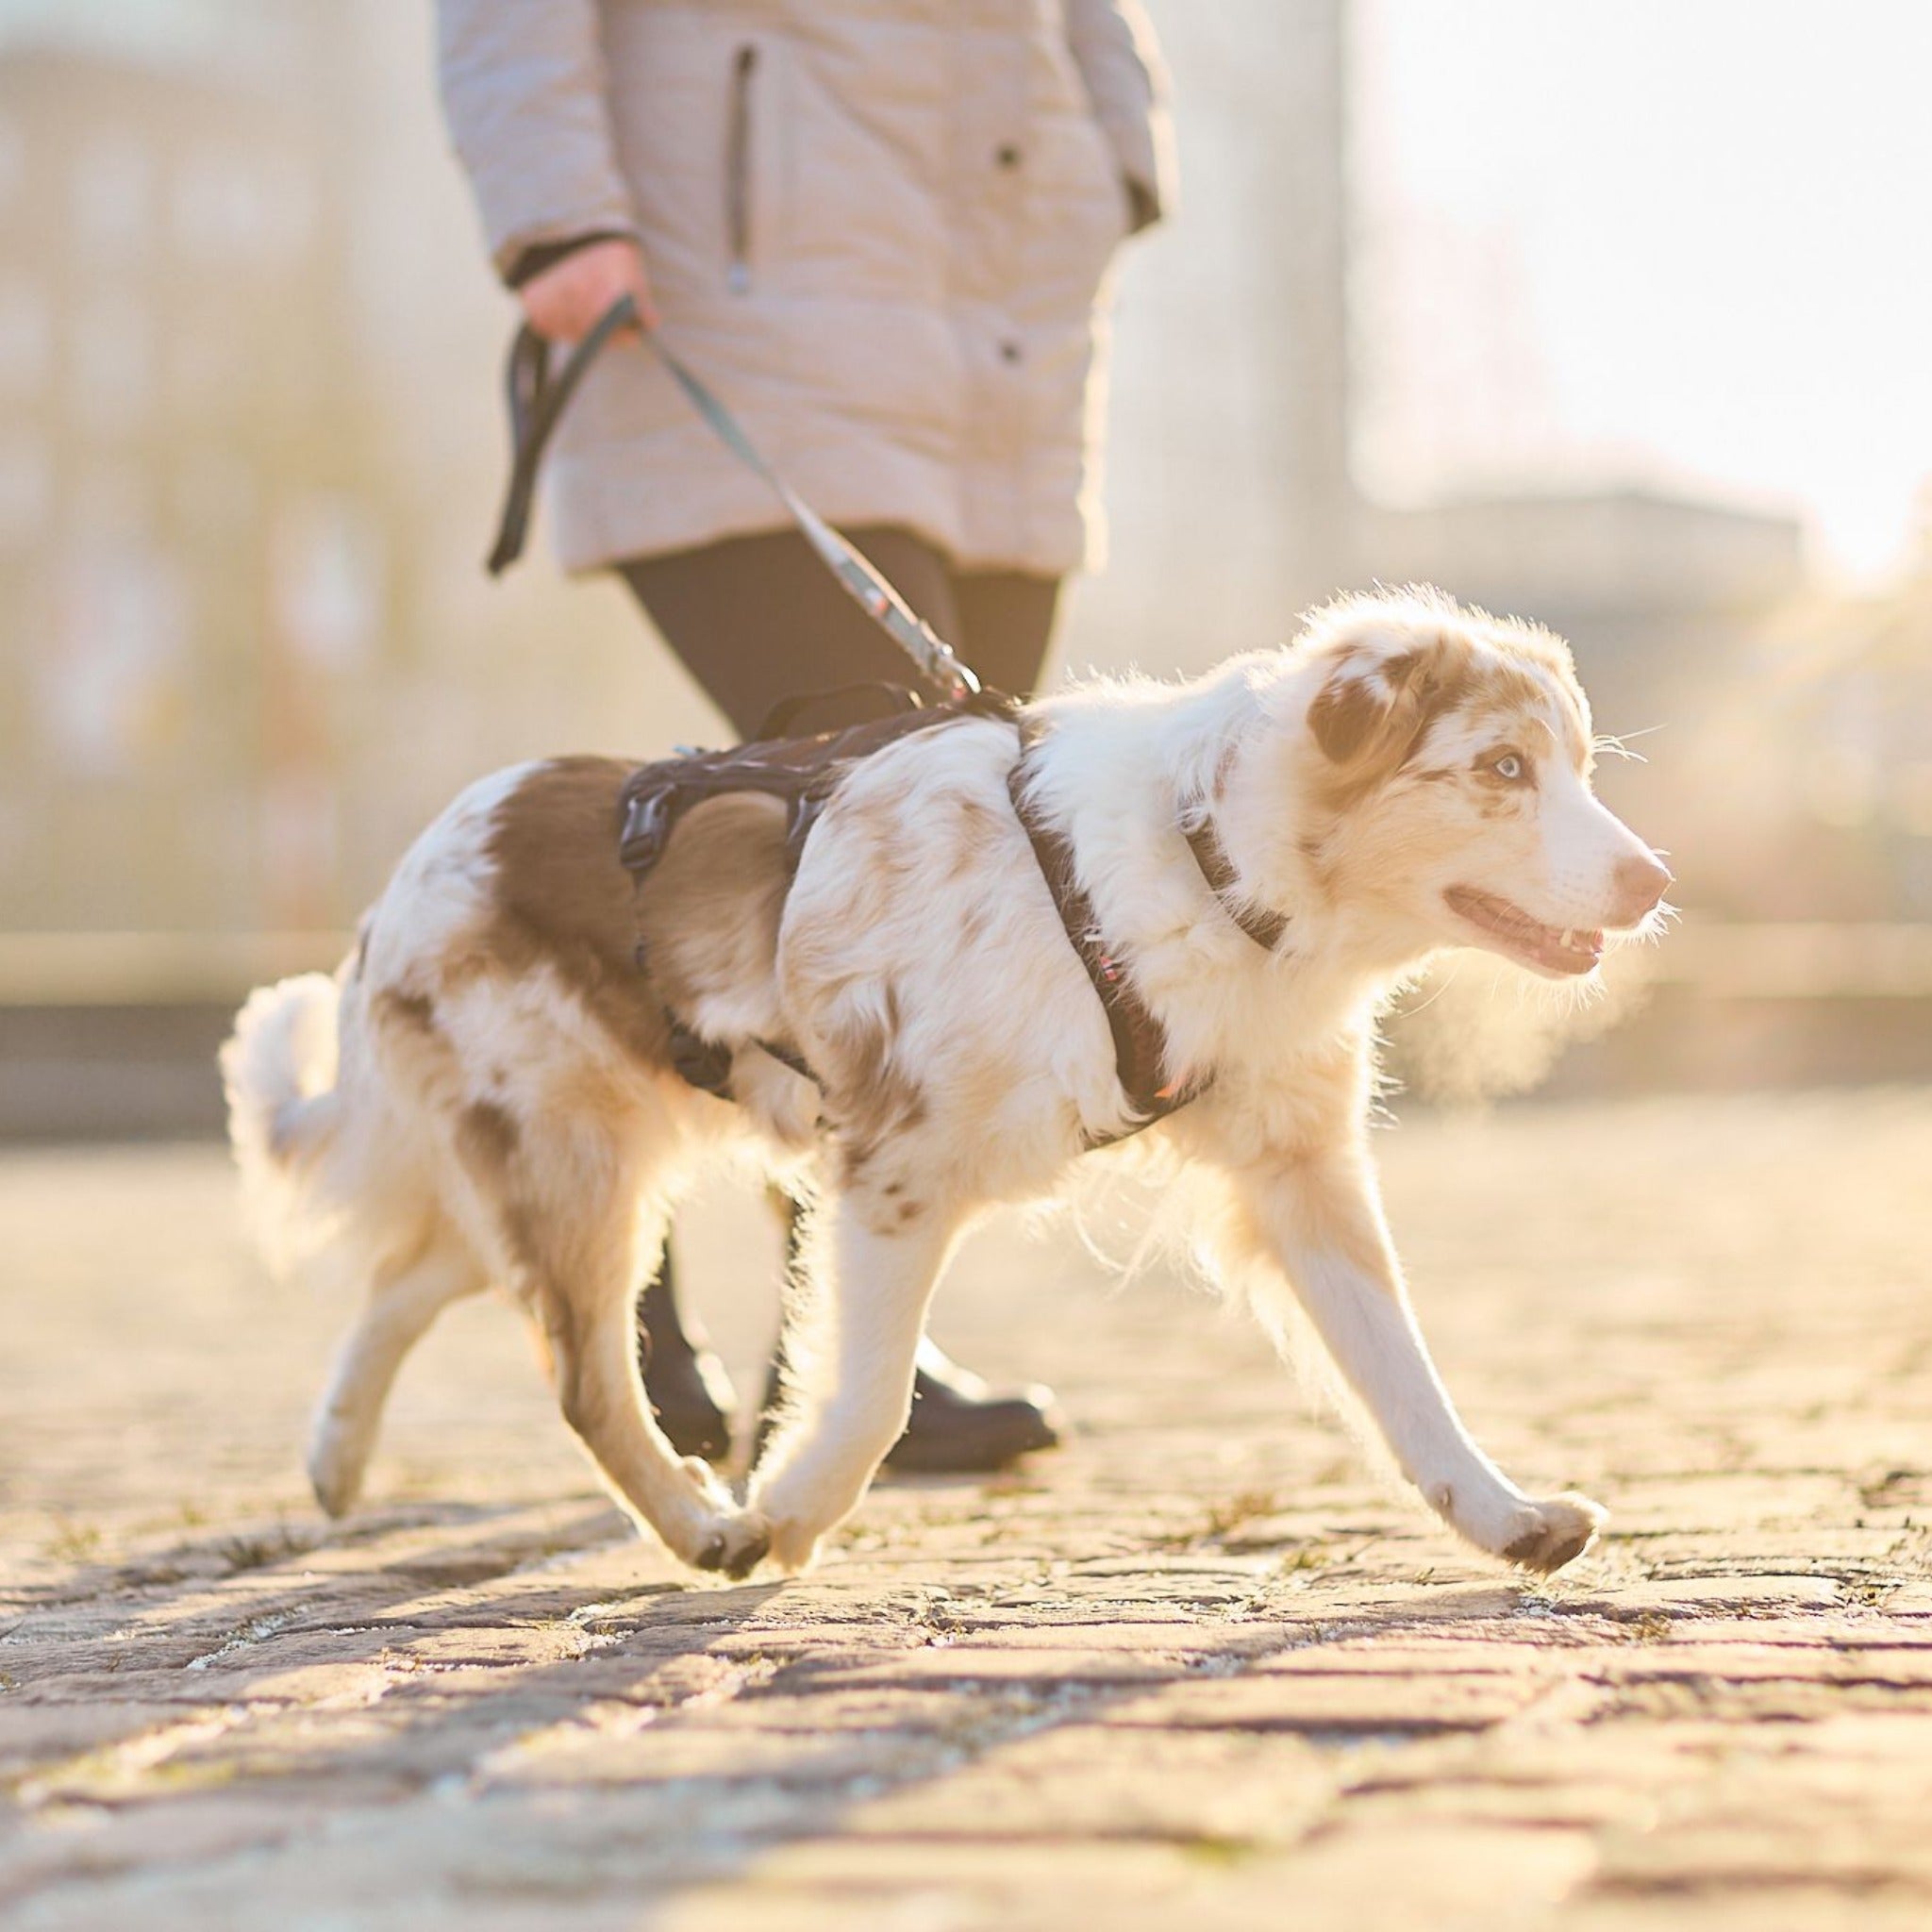 Non-stop dogwear Rock Dog Harness Long